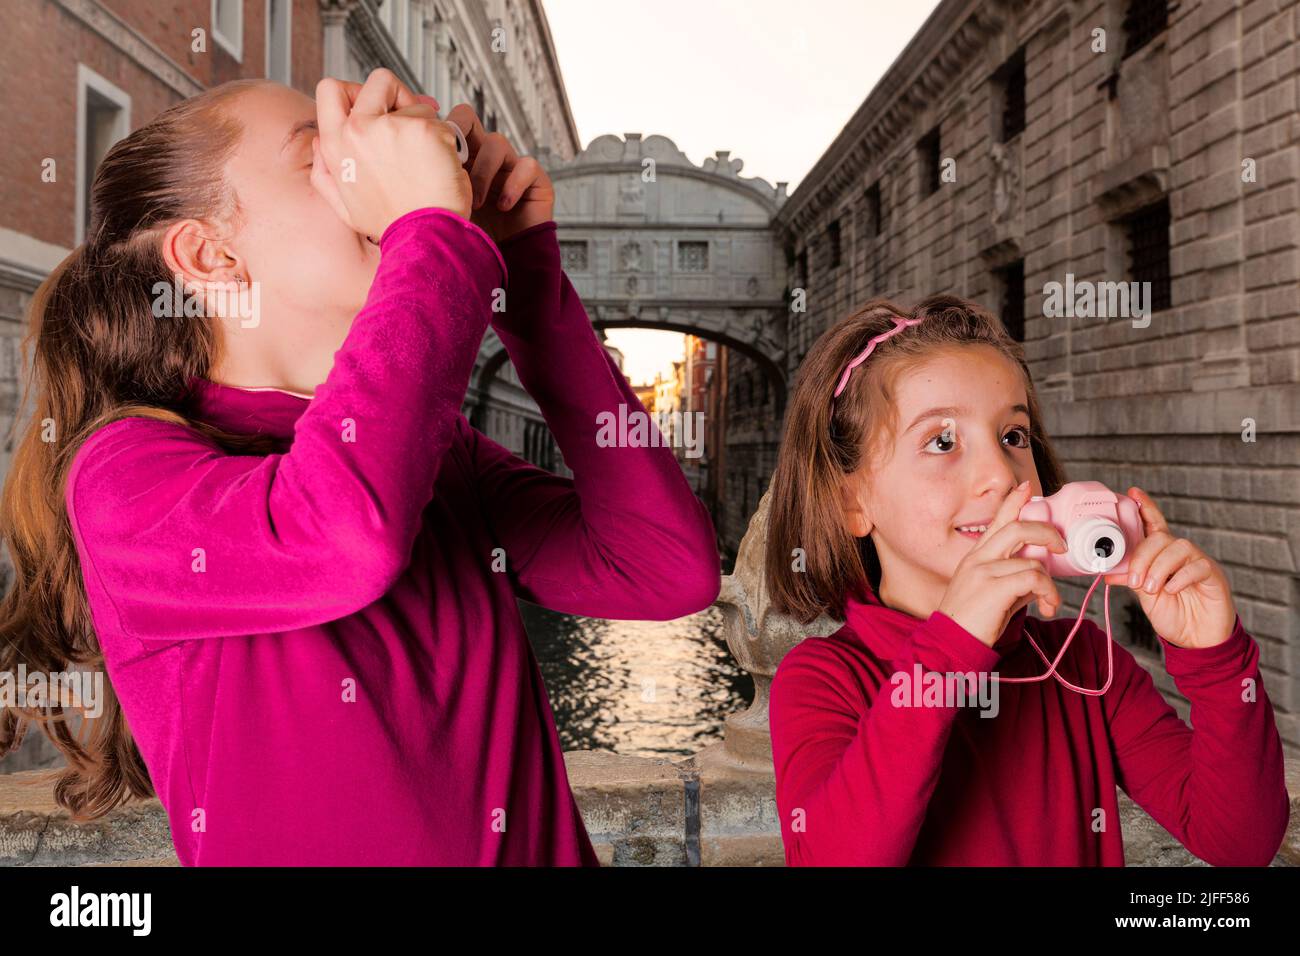 Una pareja de chicas pequeñas tomando fotografías con la cámara de fotos de juguete en el Puente de los Suspiros, Venecia Foto de stock